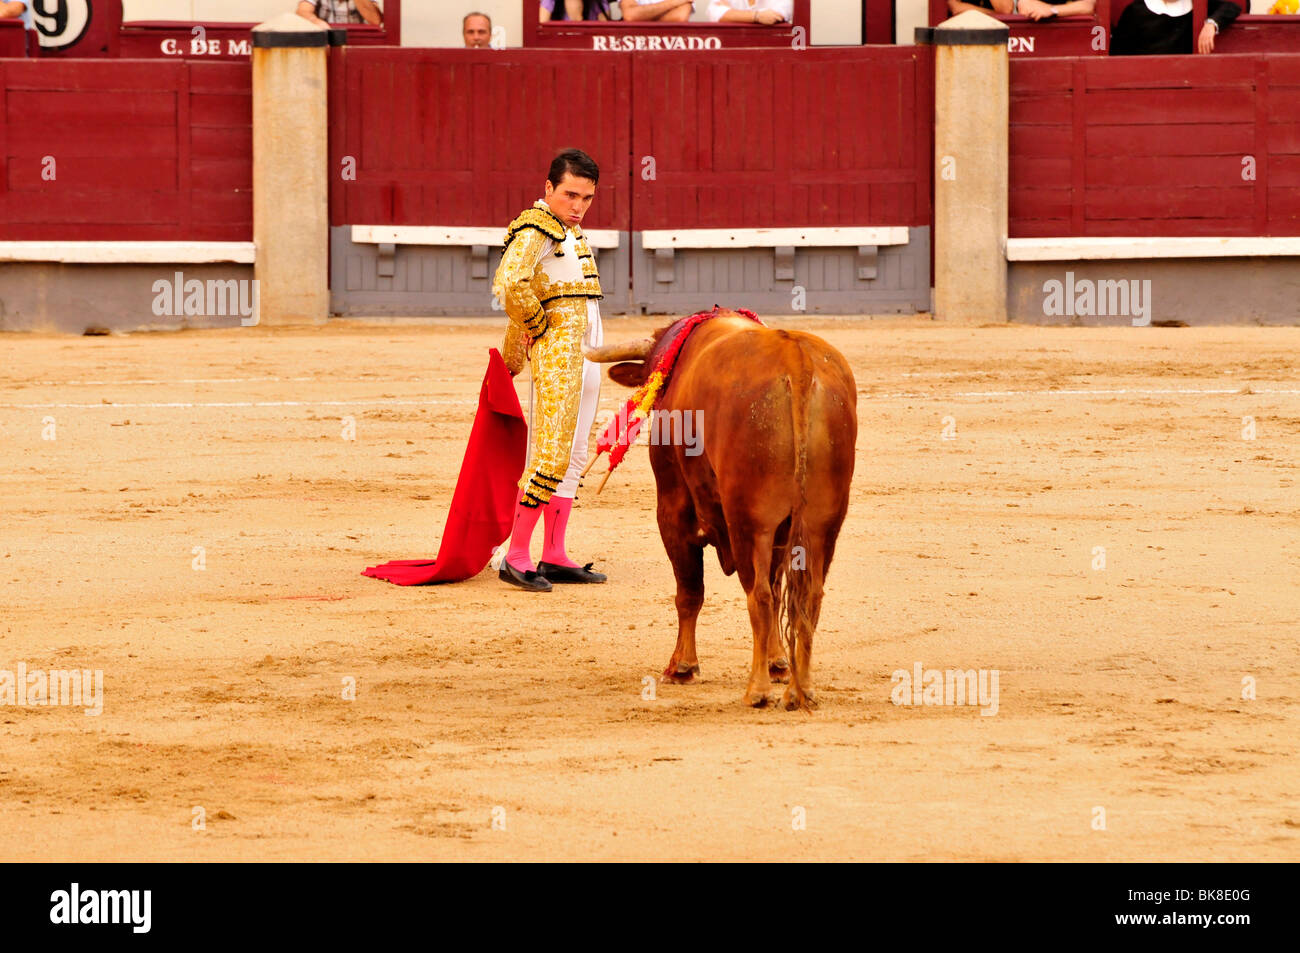 Torero, Matador, mit einem roten Umhang, Muleta und Schwert, Estoque in Las Ventas Stierkampfarena, Madrid, Spanien, Iberische Halbinsel Stockfoto